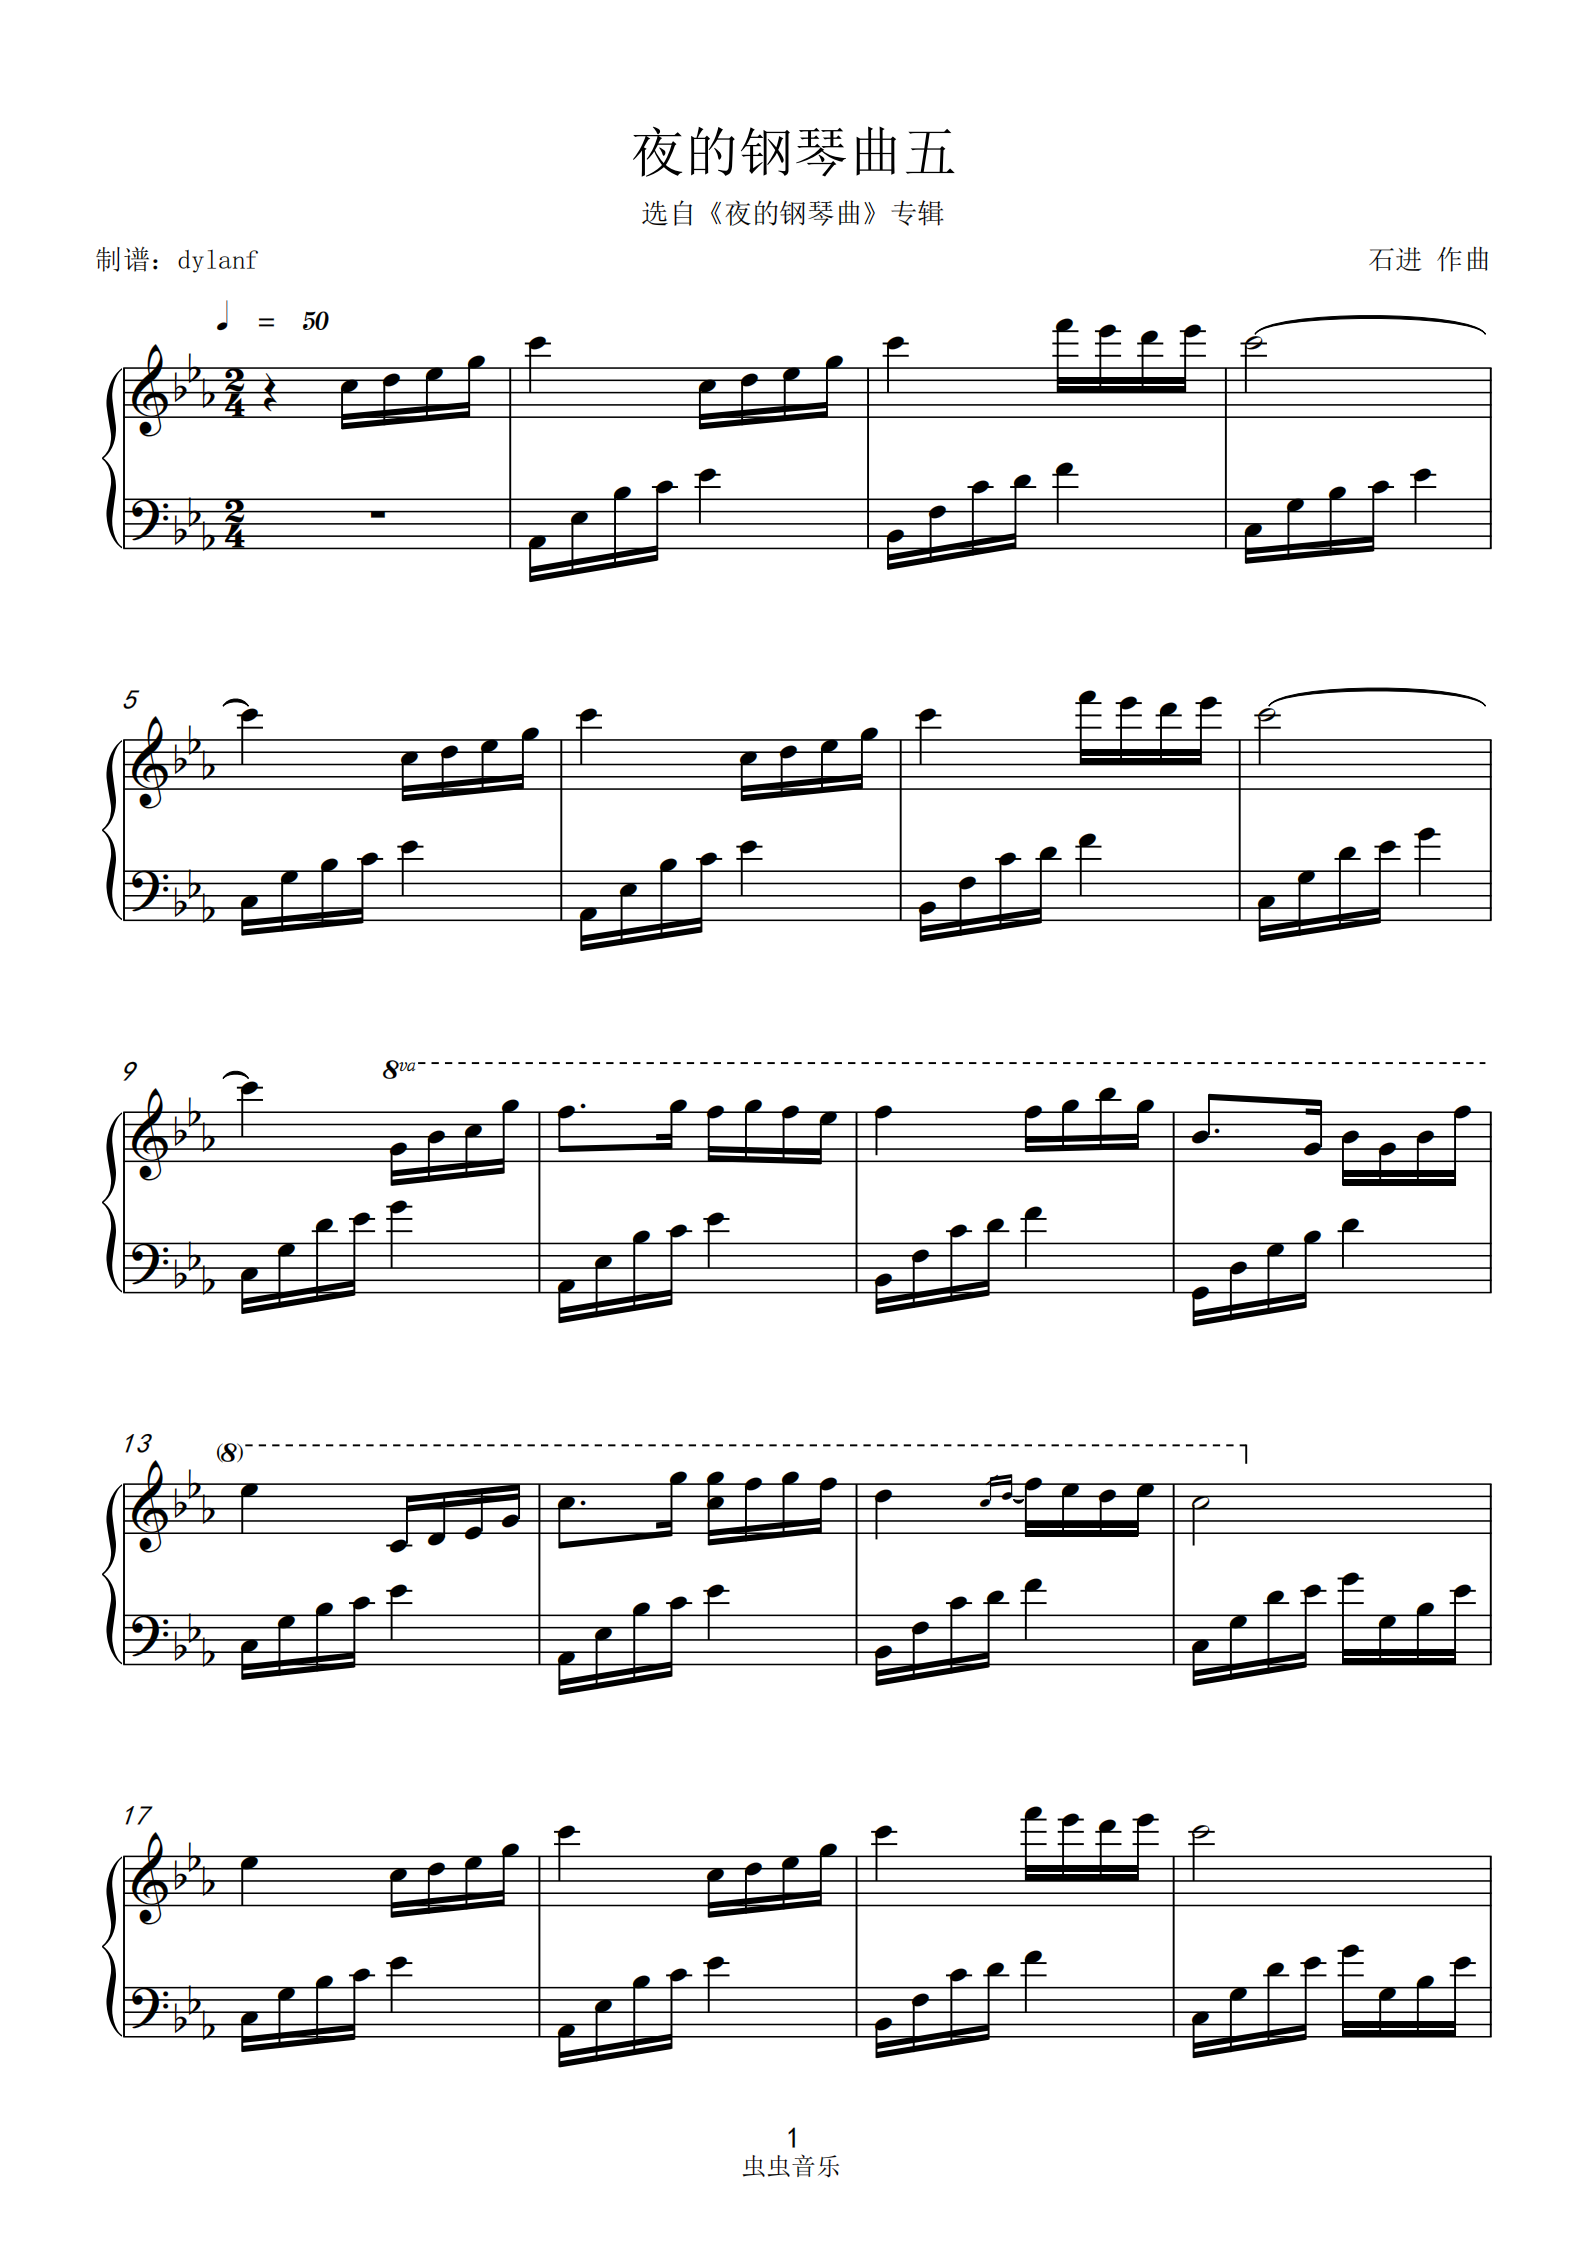 夜的钢琴曲 25-石进双手简谱预览1-钢琴谱文件（五线谱、双手简谱、数字谱、Midi、PDF）免费下载